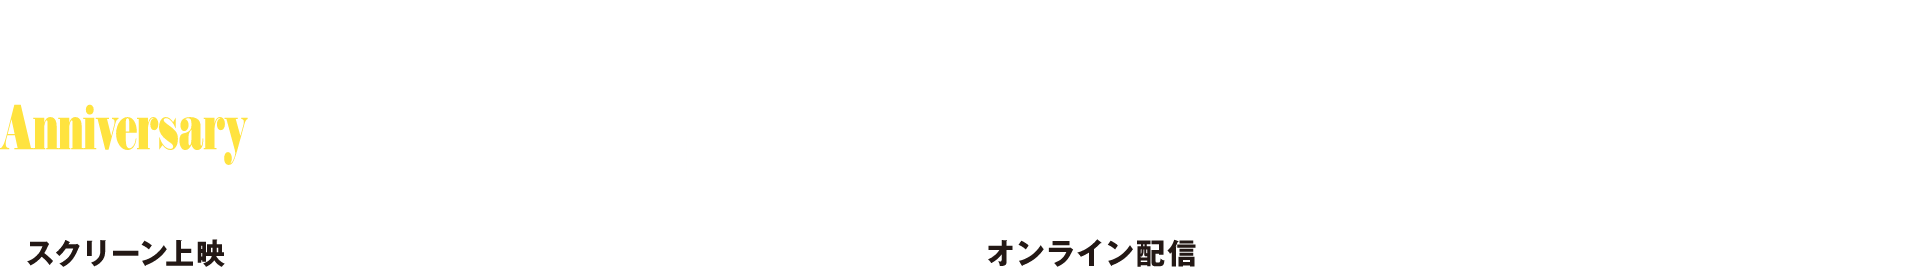 SKIPシティー国際Dシネマ映画祭2021